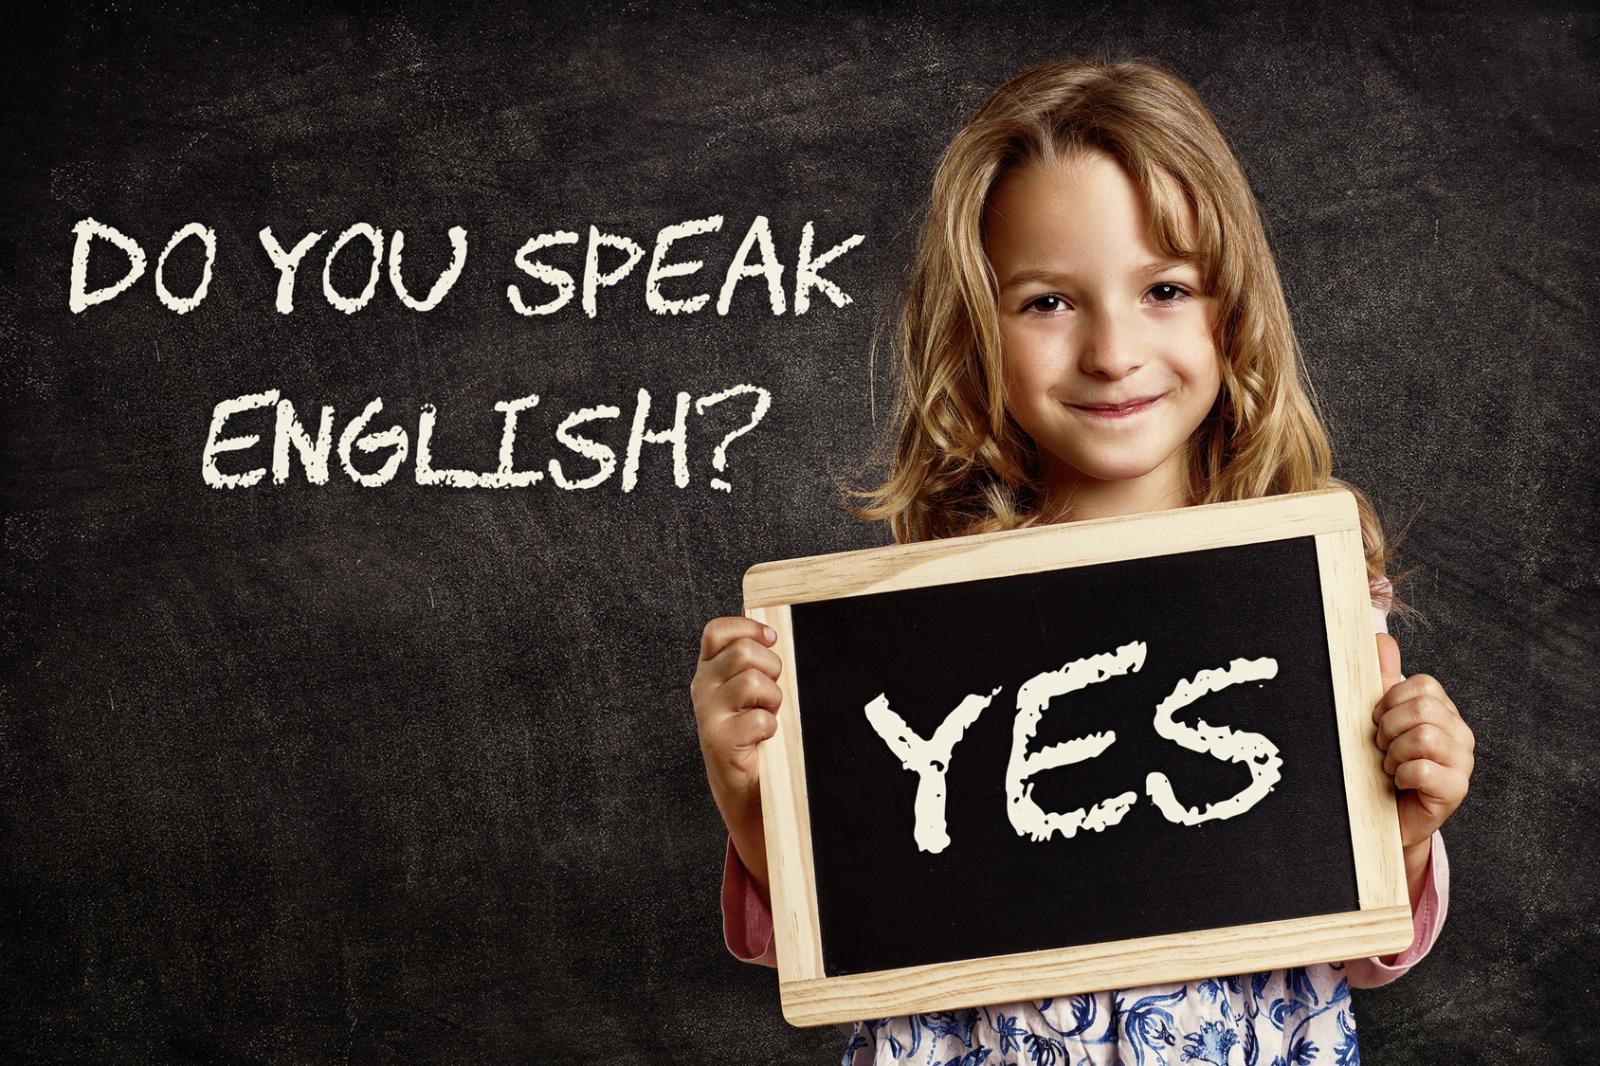 Да детка на английском. Английский для детей. Английский язык для детей. Дети учат английский. Дети изучают английский язык.